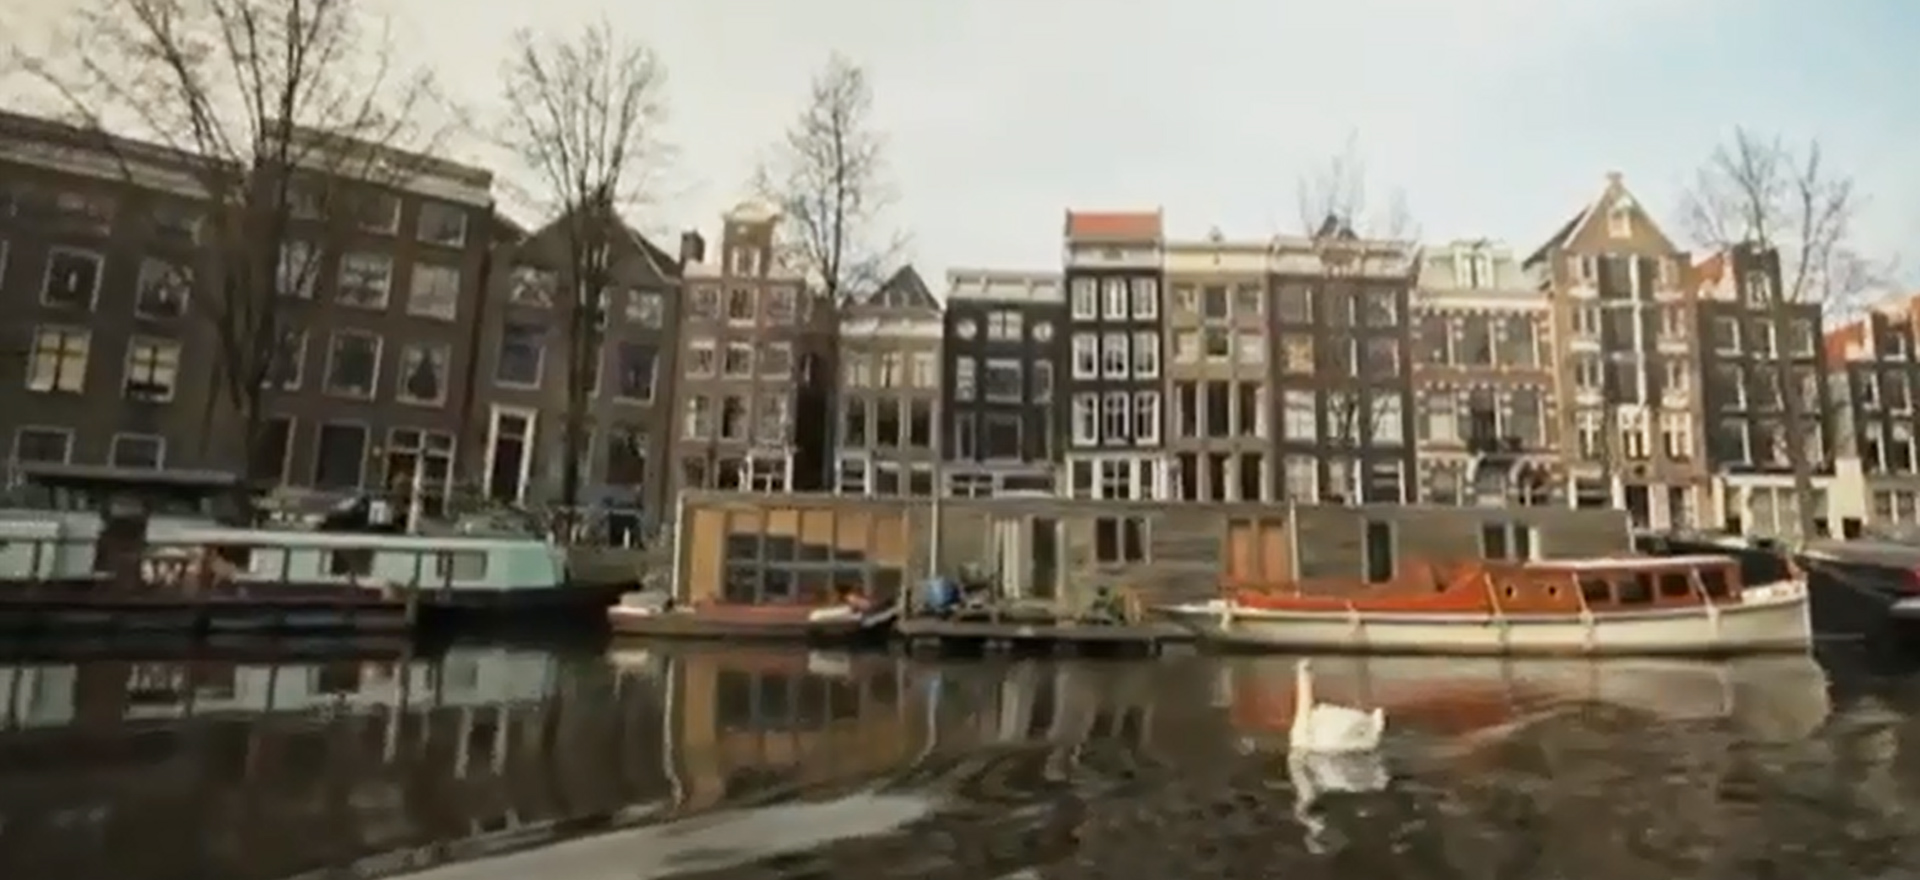 Habitat durable : Amsterdam, ville durable, met le cap sur l'autosuffisance